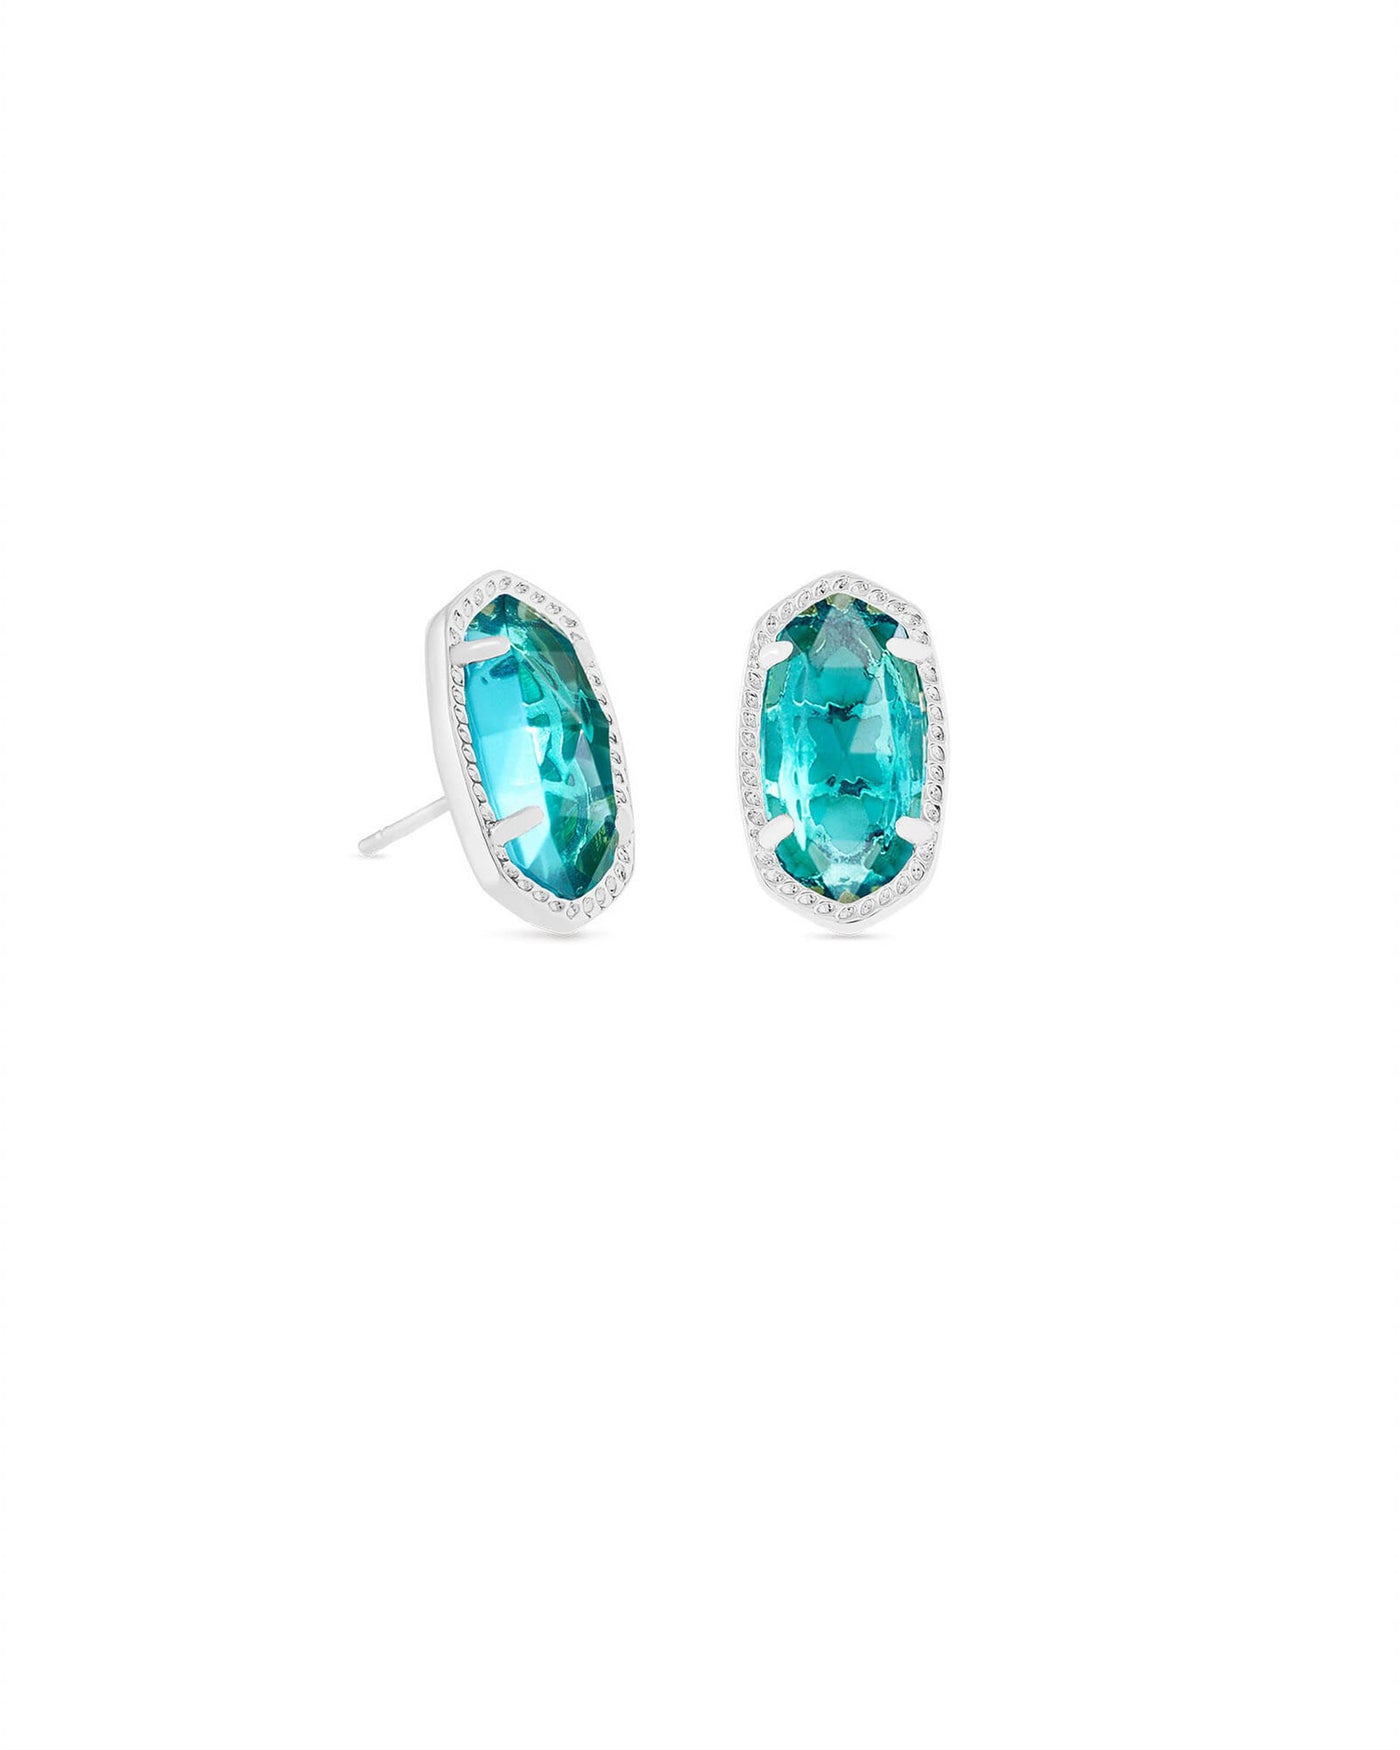 Silver Tone Earrings Featuring London Blue Clear Glass by Kendra Scott